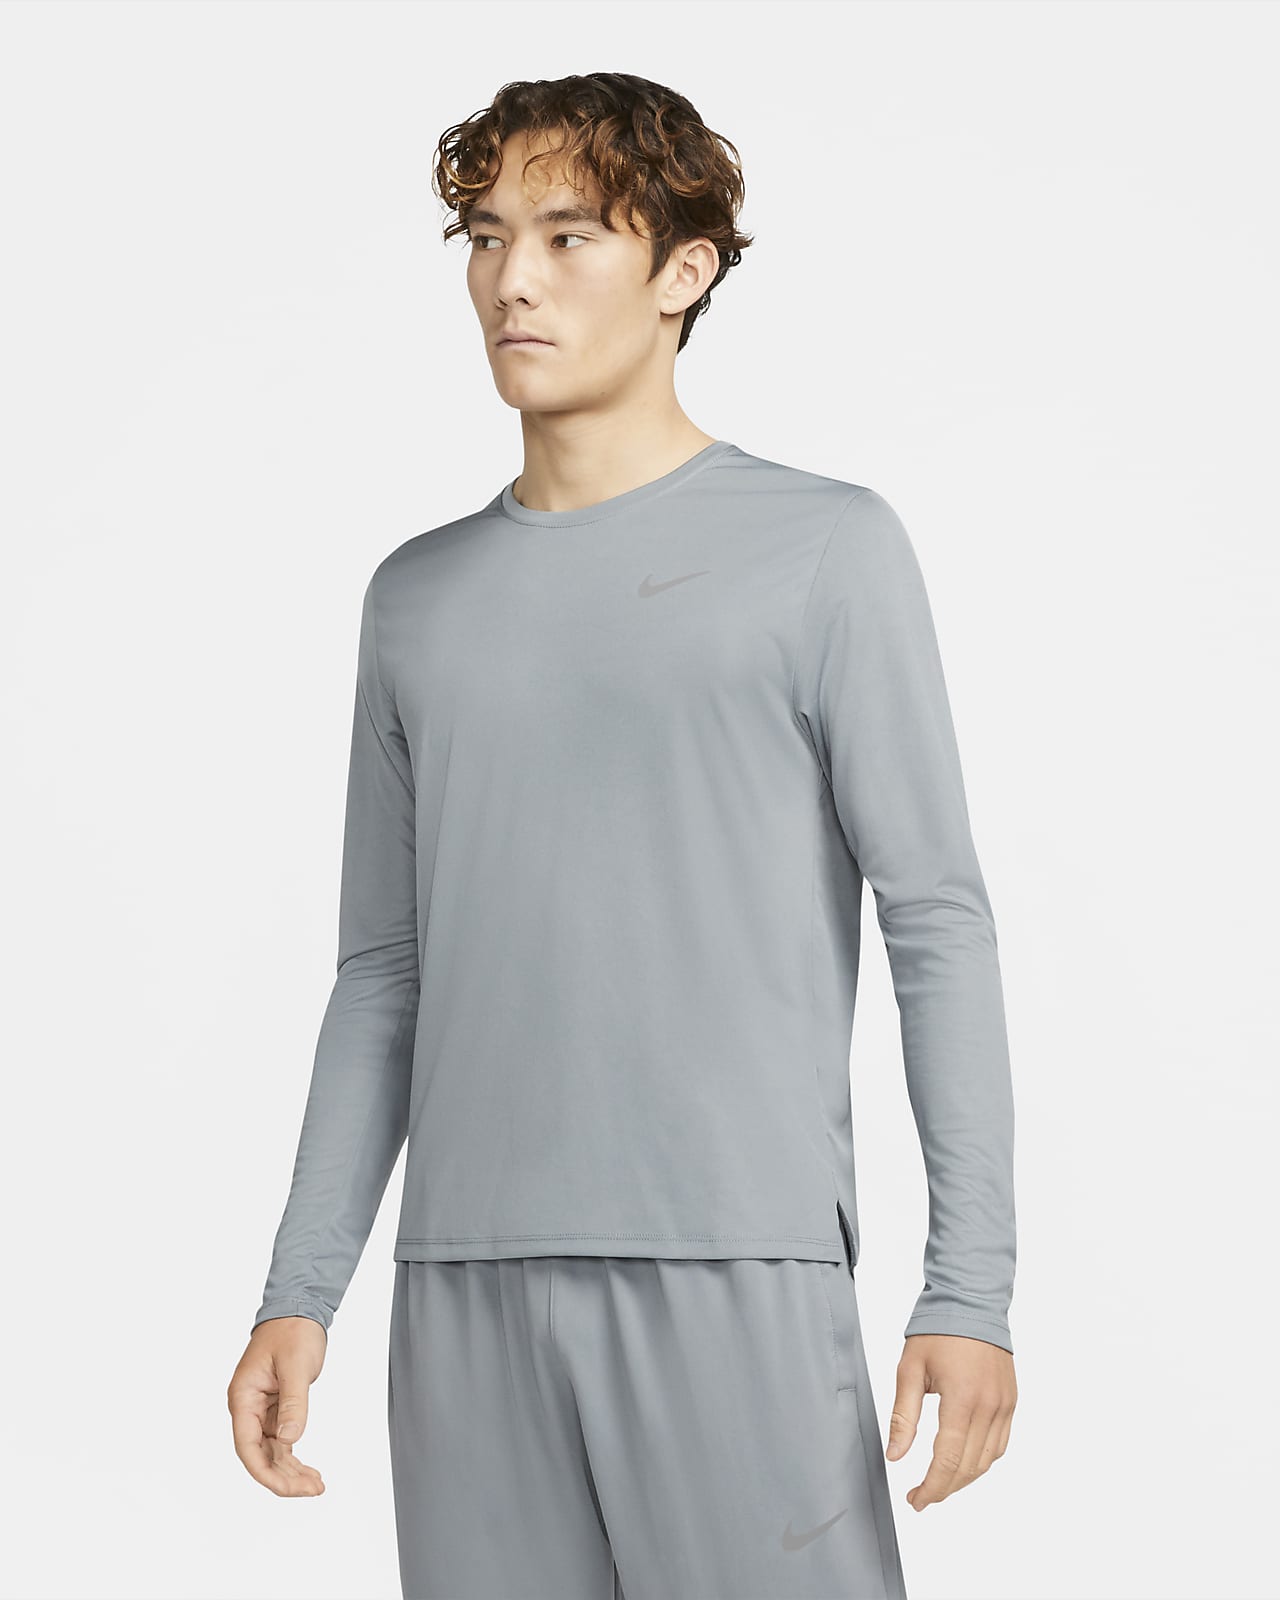 Nike Dri-FIT Miler 男款長袖跑步上衣